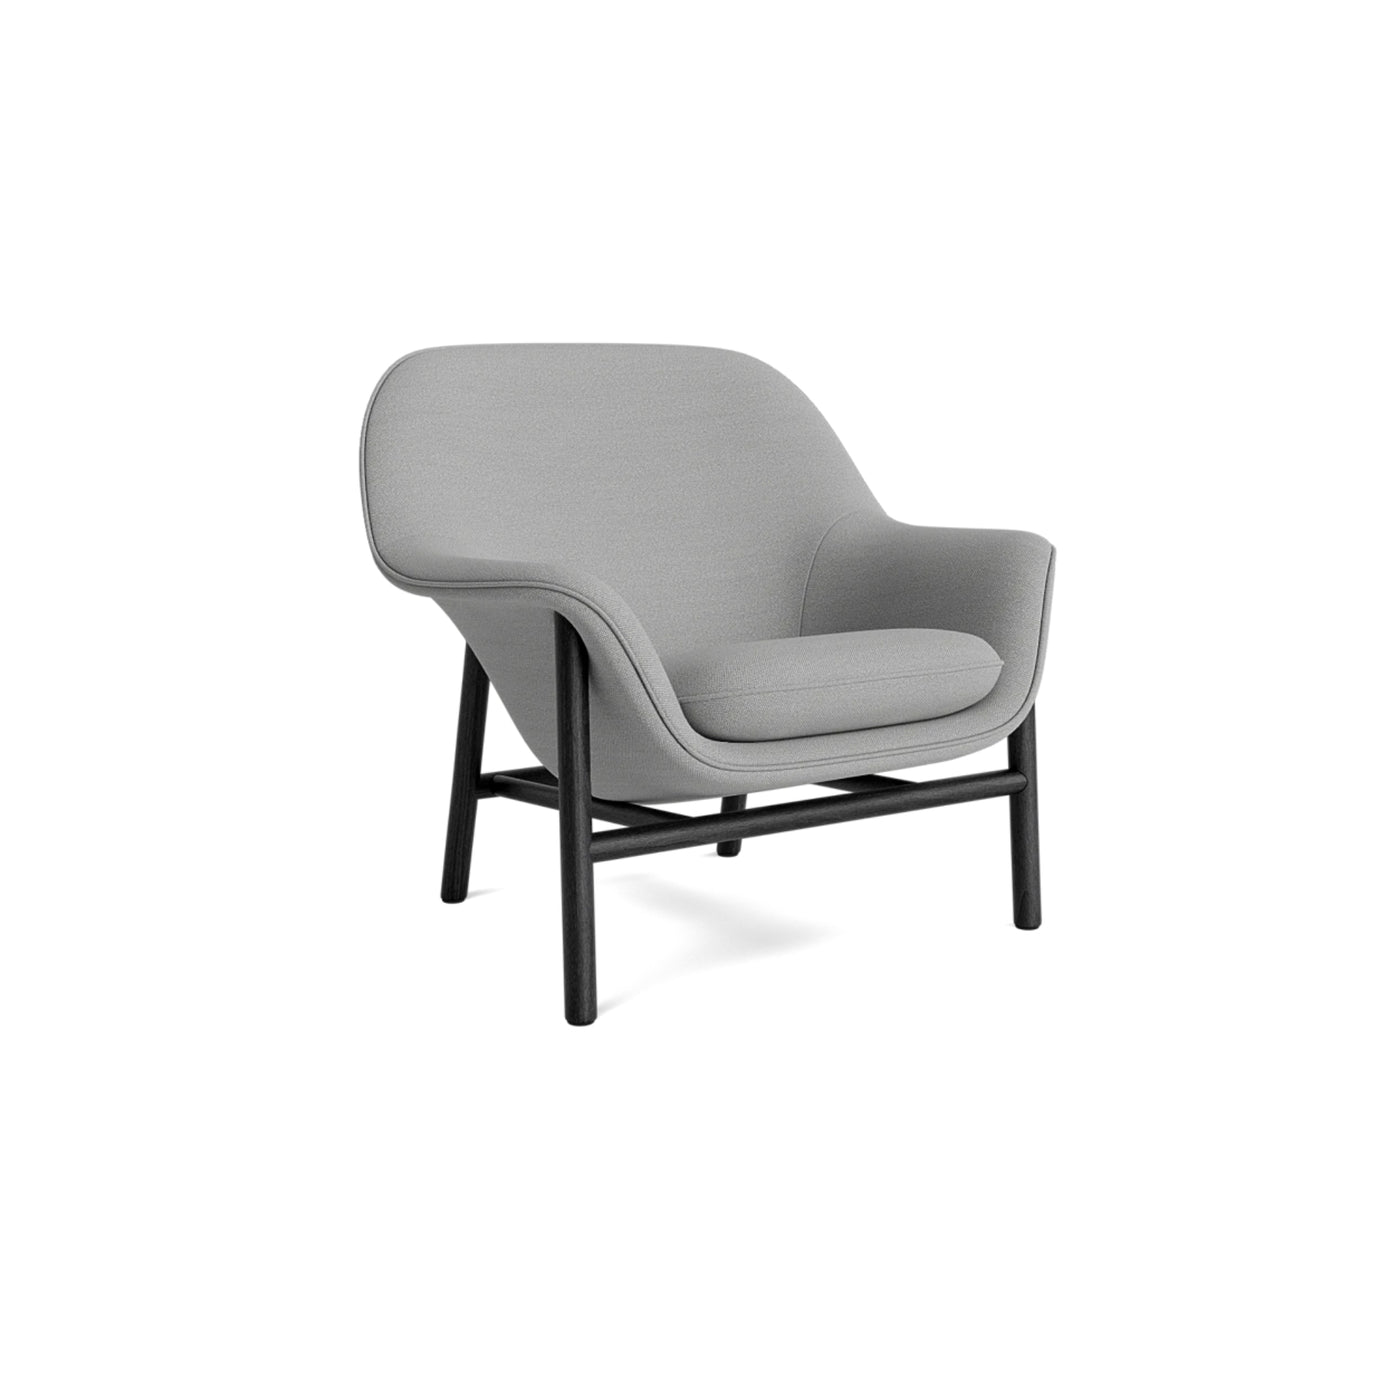 Normann Copenhagen Drape Lounge Chair at someday designs. #colour_hallingdal-123